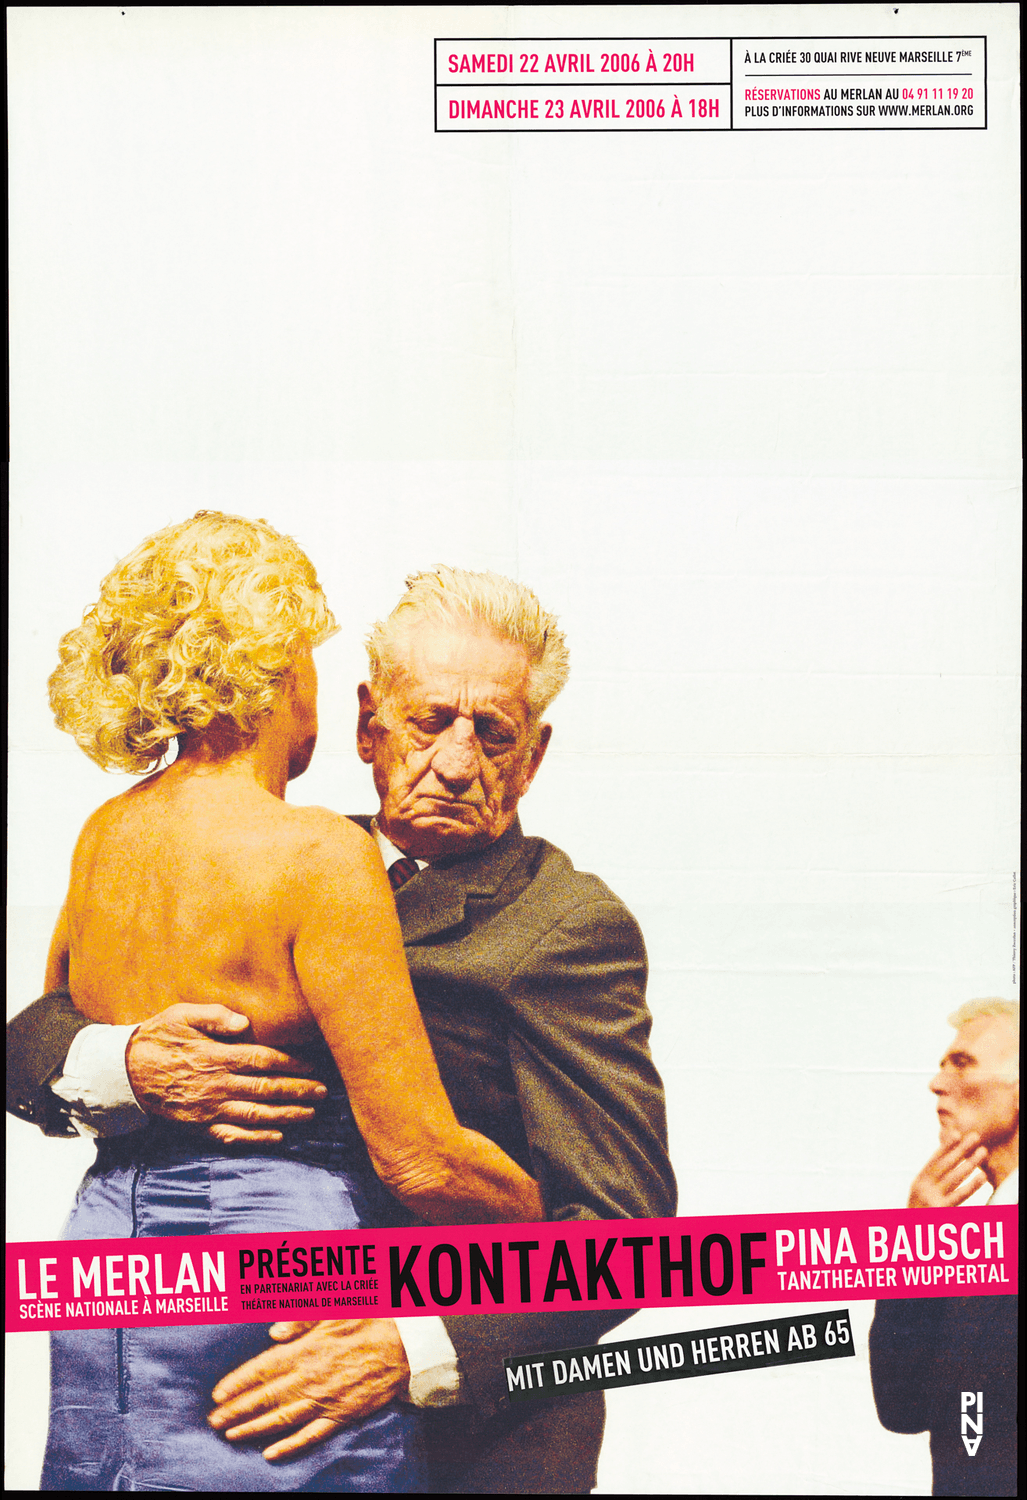 Plakat zu „Kontakthof. Mit Damen und Herren ab „65““ von Pina Bausch in Marseille, 22.04.2006–23.04.2006